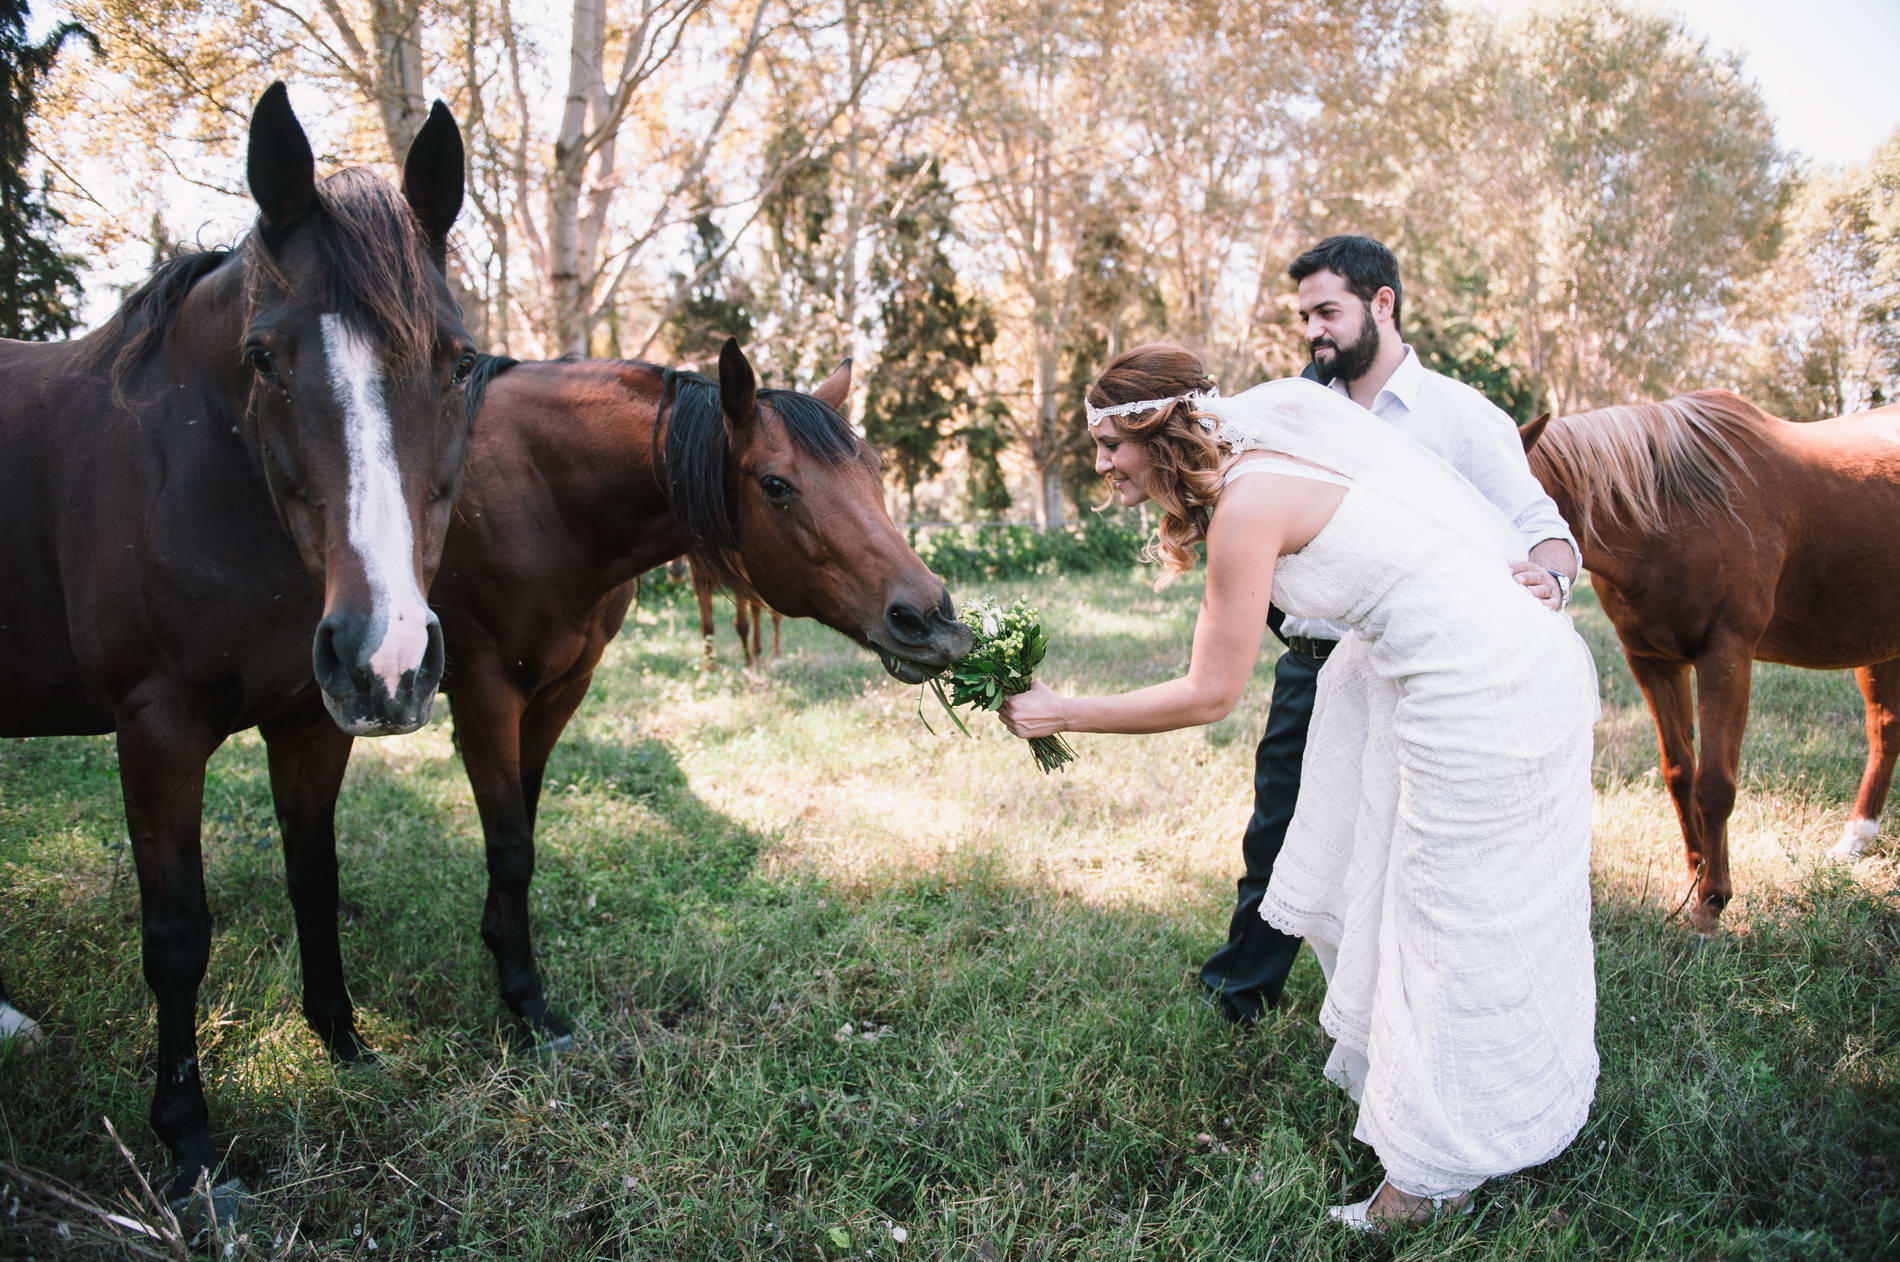 Next day φωτογράφηση γάμου στο δάσος με άλογα